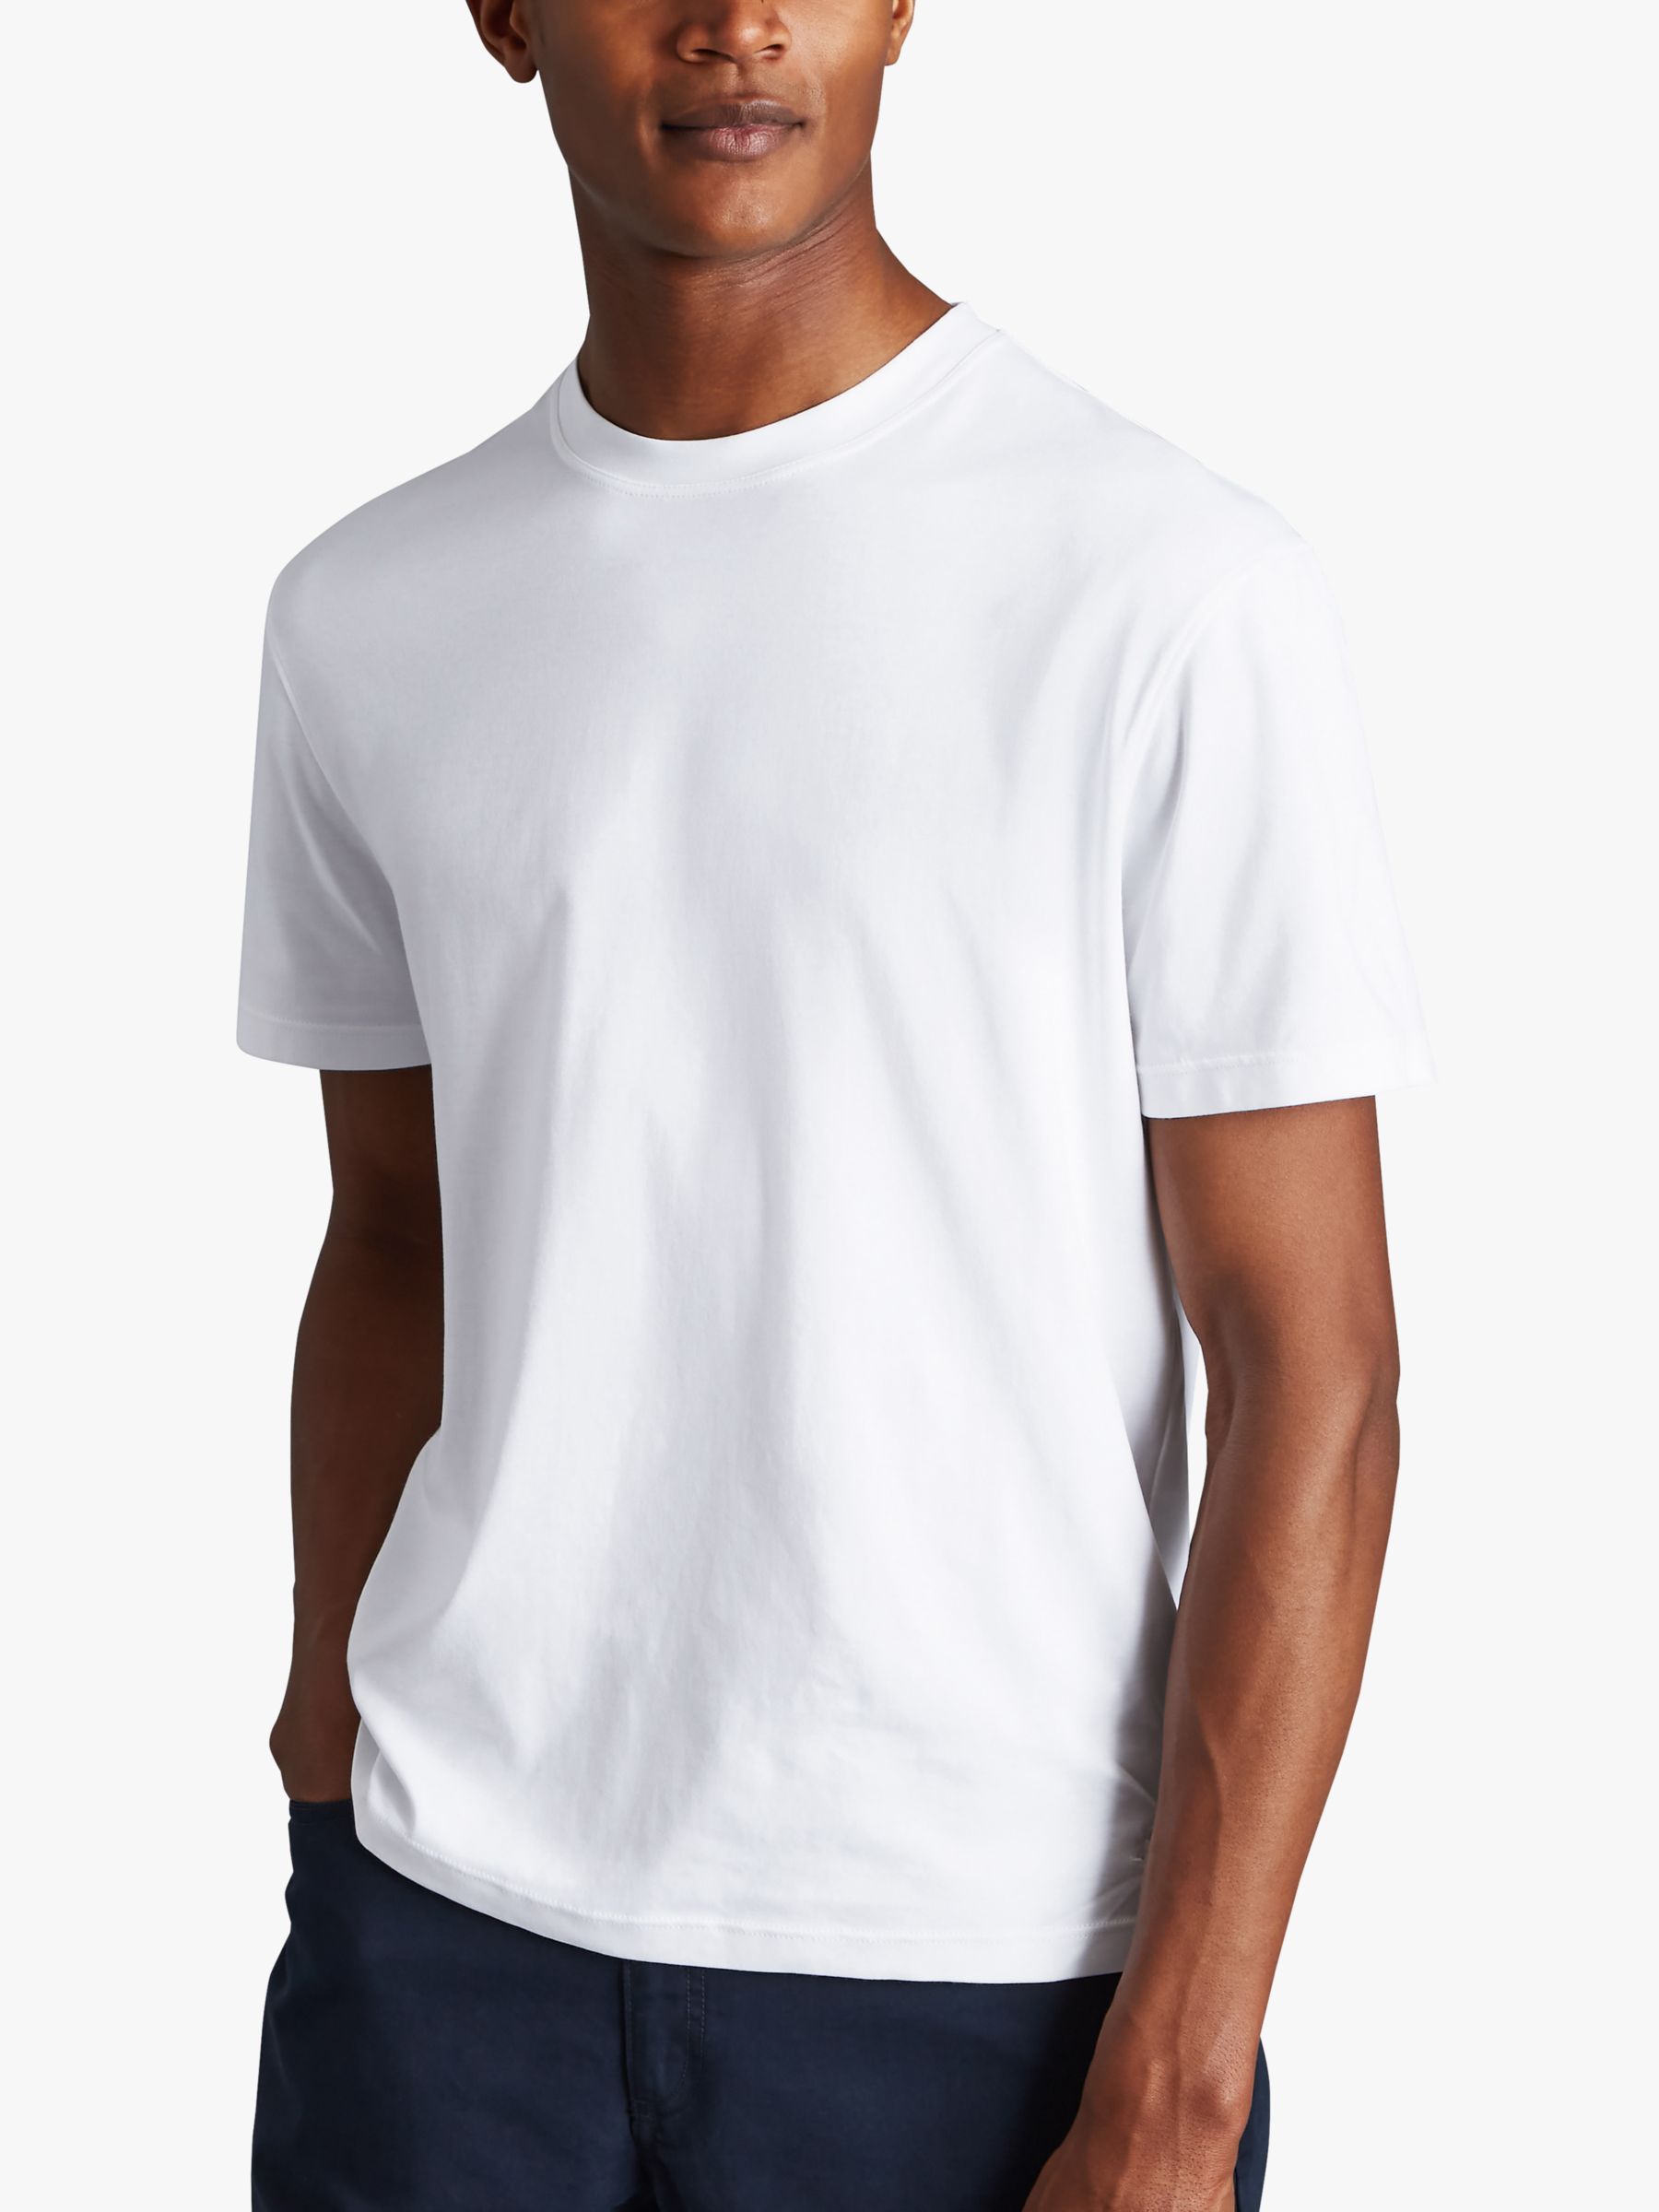 Charles Tyrwhitt Cotton Short Sleeve T-Shirt, White at John Lewis & Partners